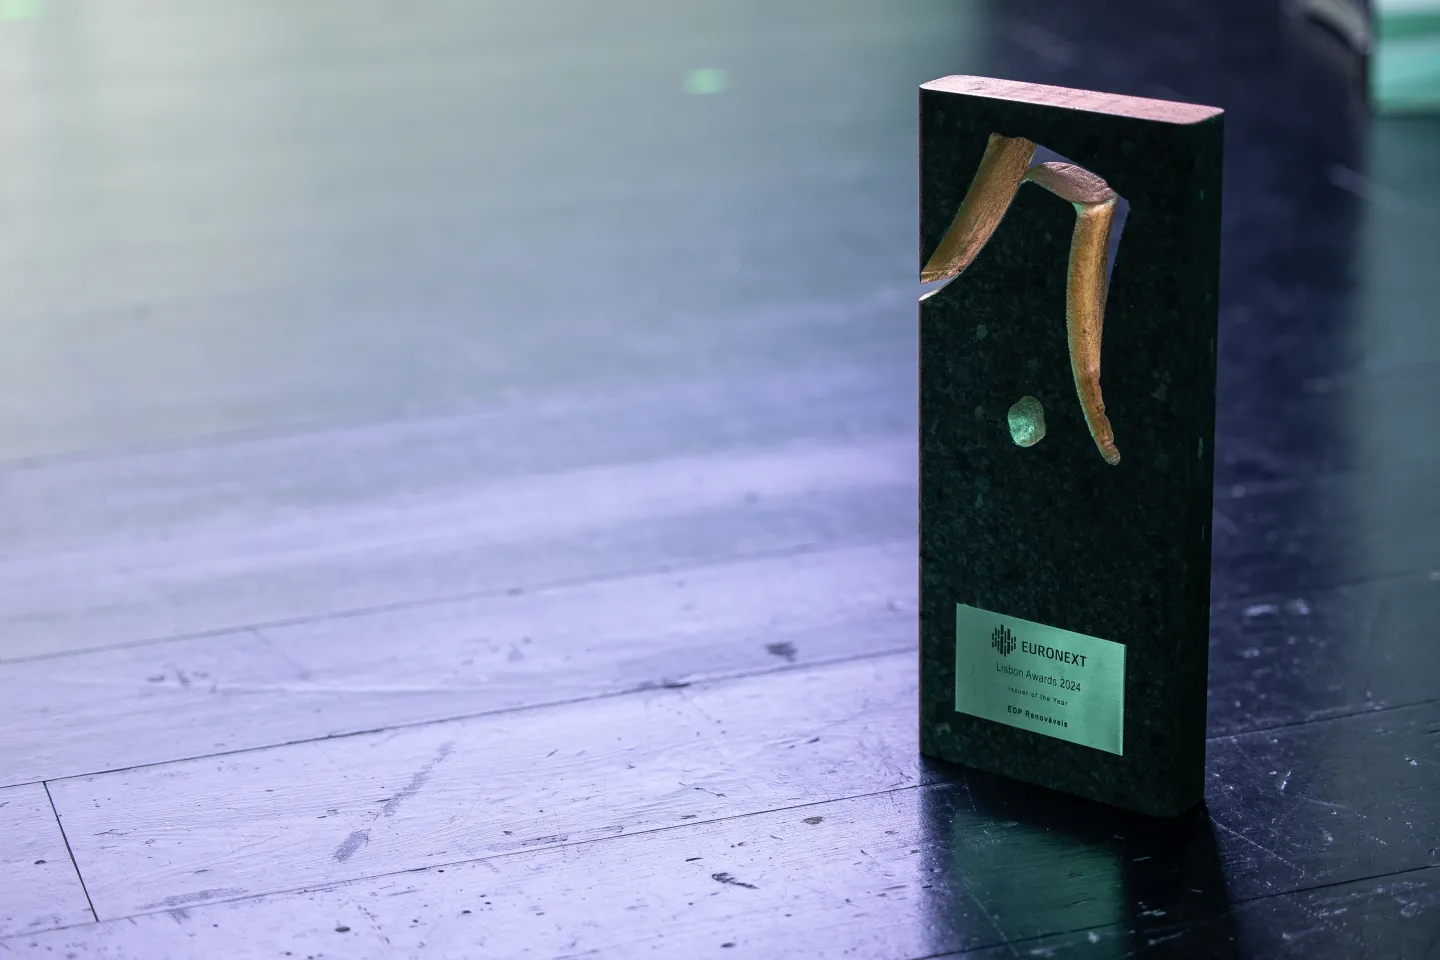 Euronext Lisbon awards